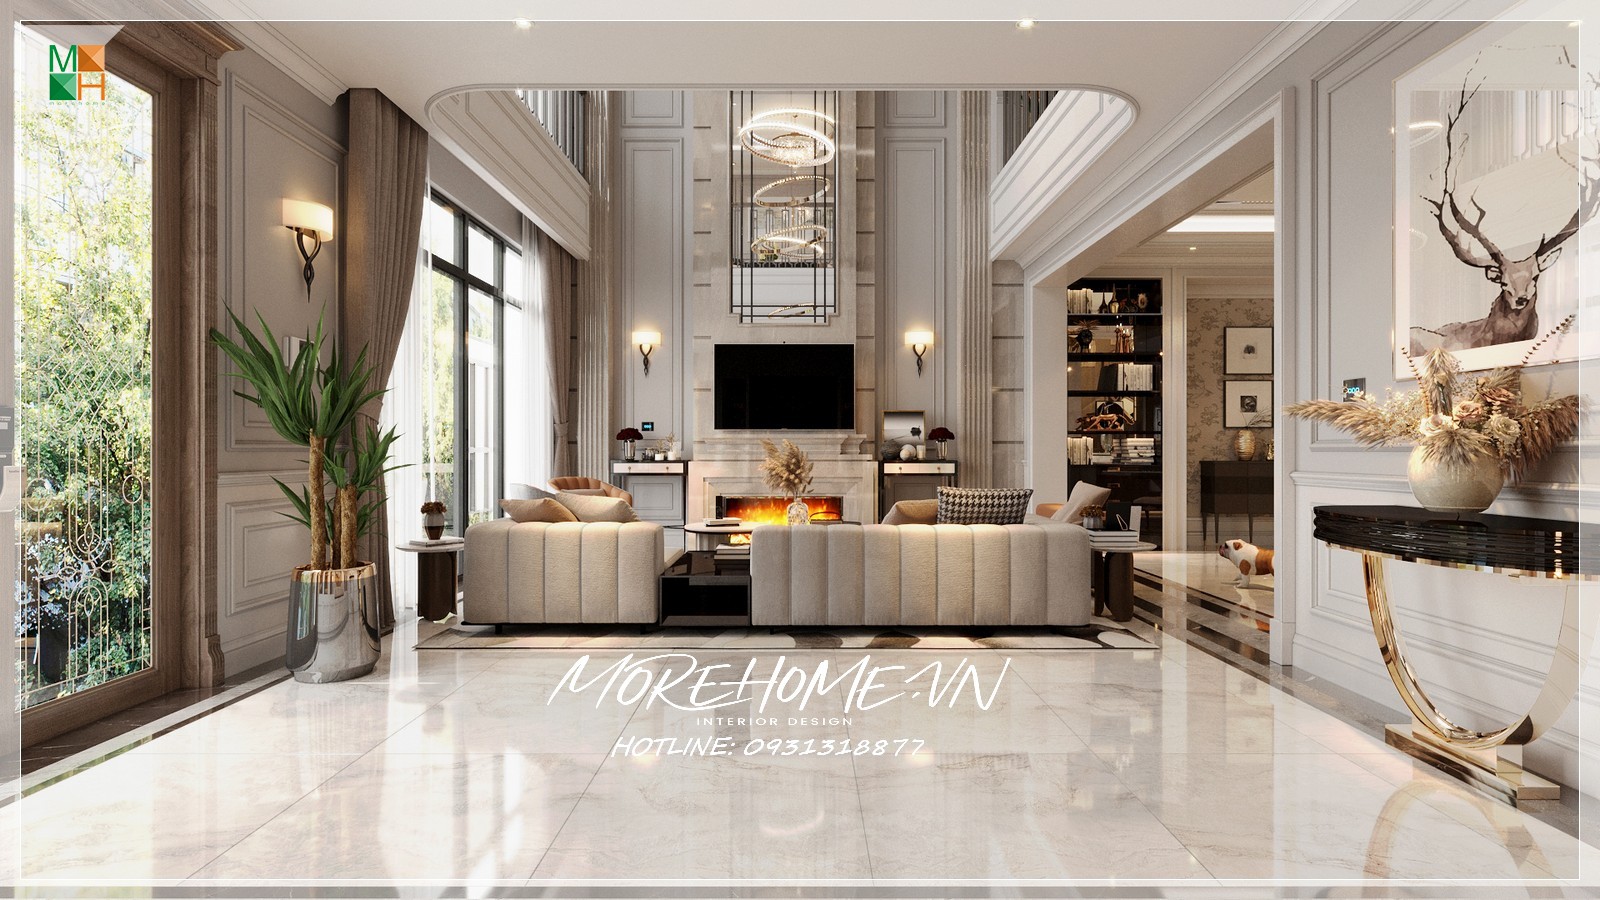 Bàn trang trí phòng khách là món đồ nội thất được đông đảo các quý khách hàng quan tâm và lựa chọn bởi phong cách thiết kế hiện đại và những ưu điểm nổi bật của nó.